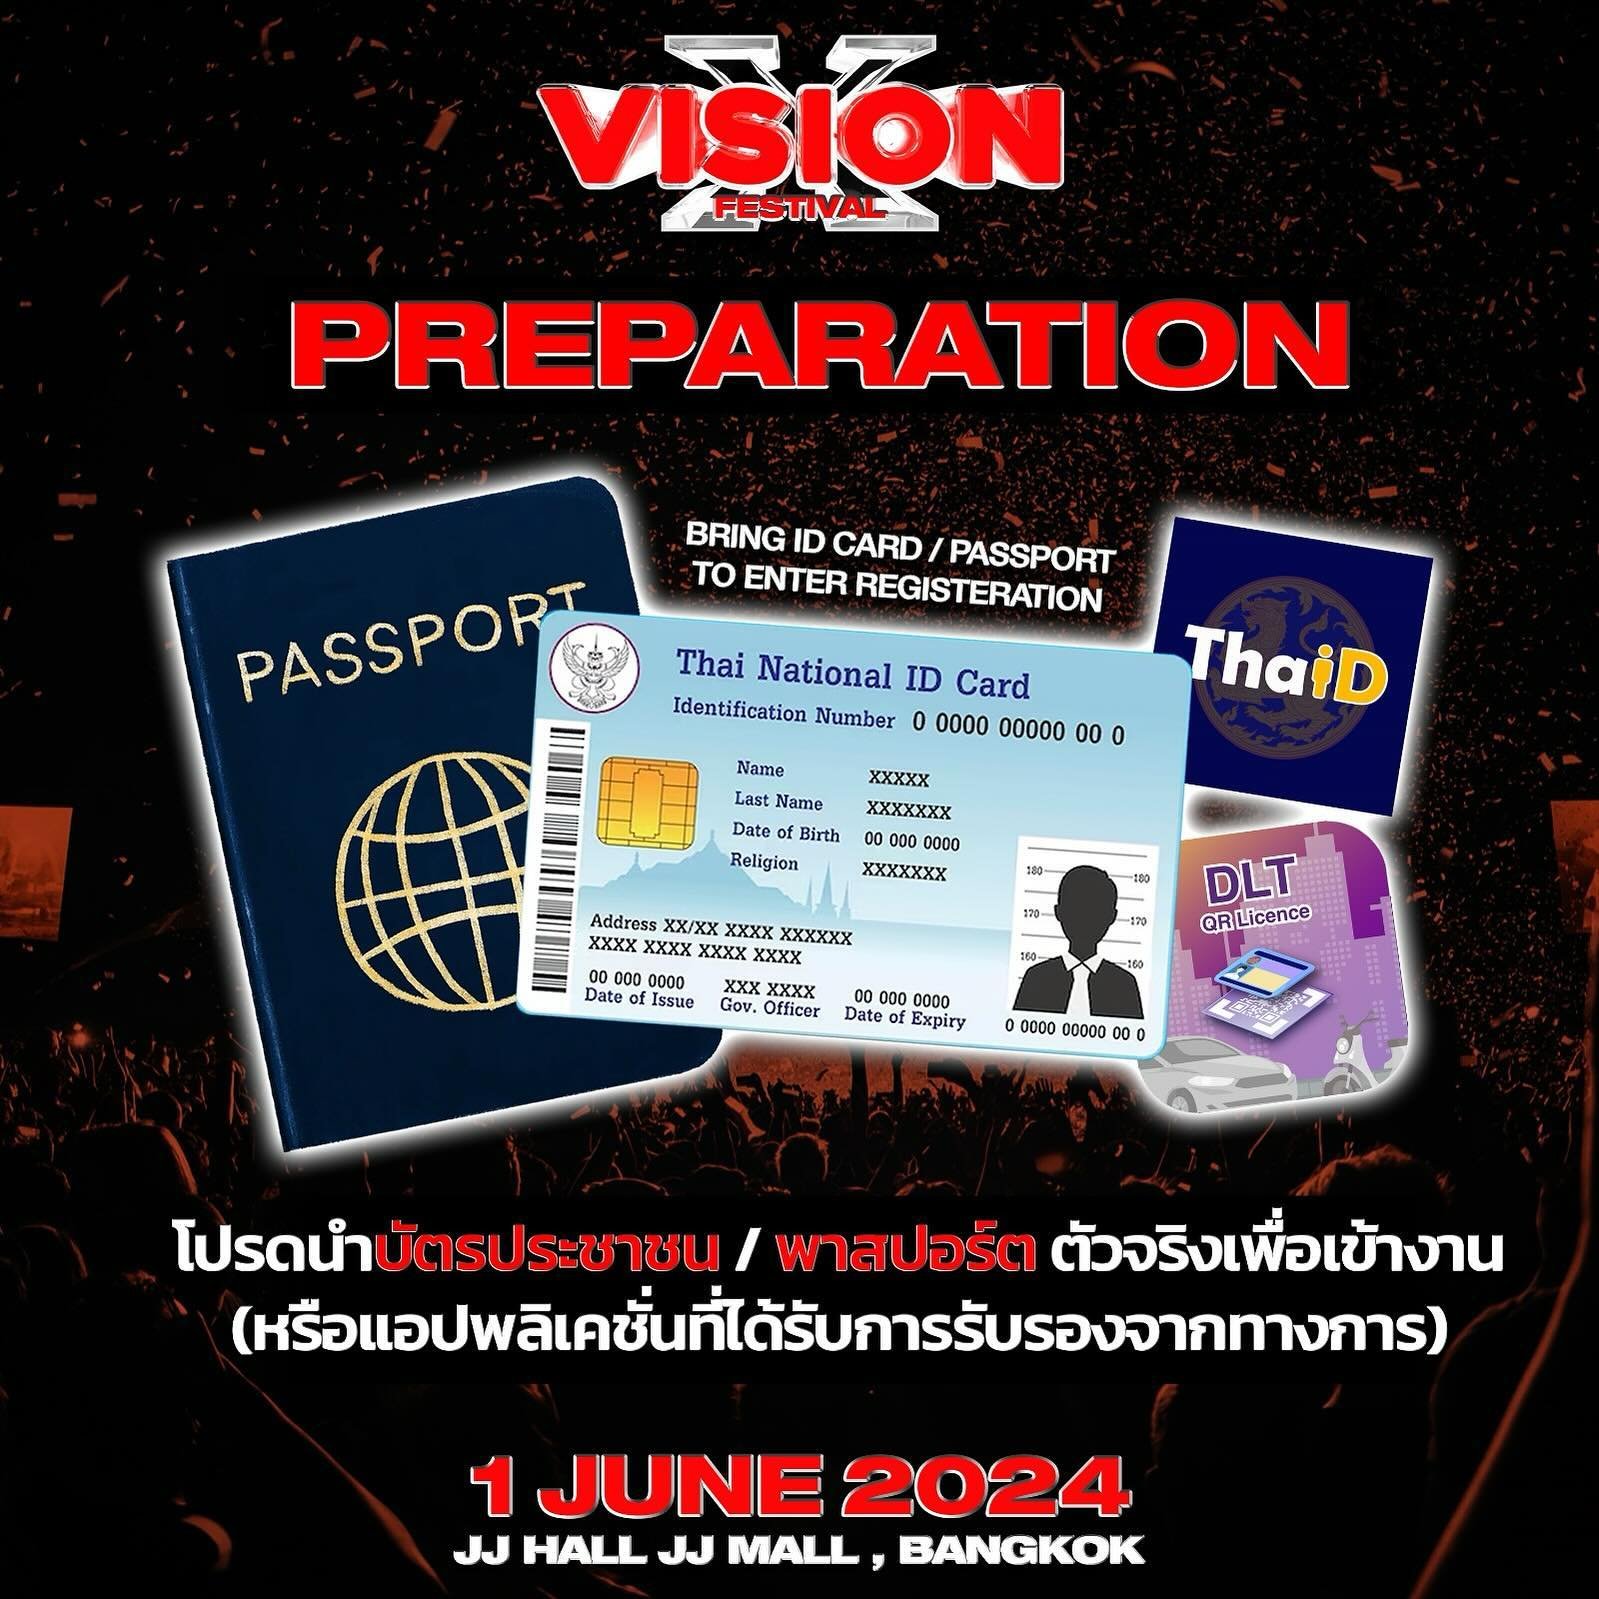 เอกสารที่สามารถใข้ยืนยันตัวตนเข้างาน 📍

- บัตรประจำตัวประชาชน
- Passport
- ใบขับขี่
- Application &lsquo;Thai ID&rsquo;
- Application &rsquo;DLT QR License&rsquo;

Documents that can be used for identification 📍
- ID Card
- Passport
- Driving Licen